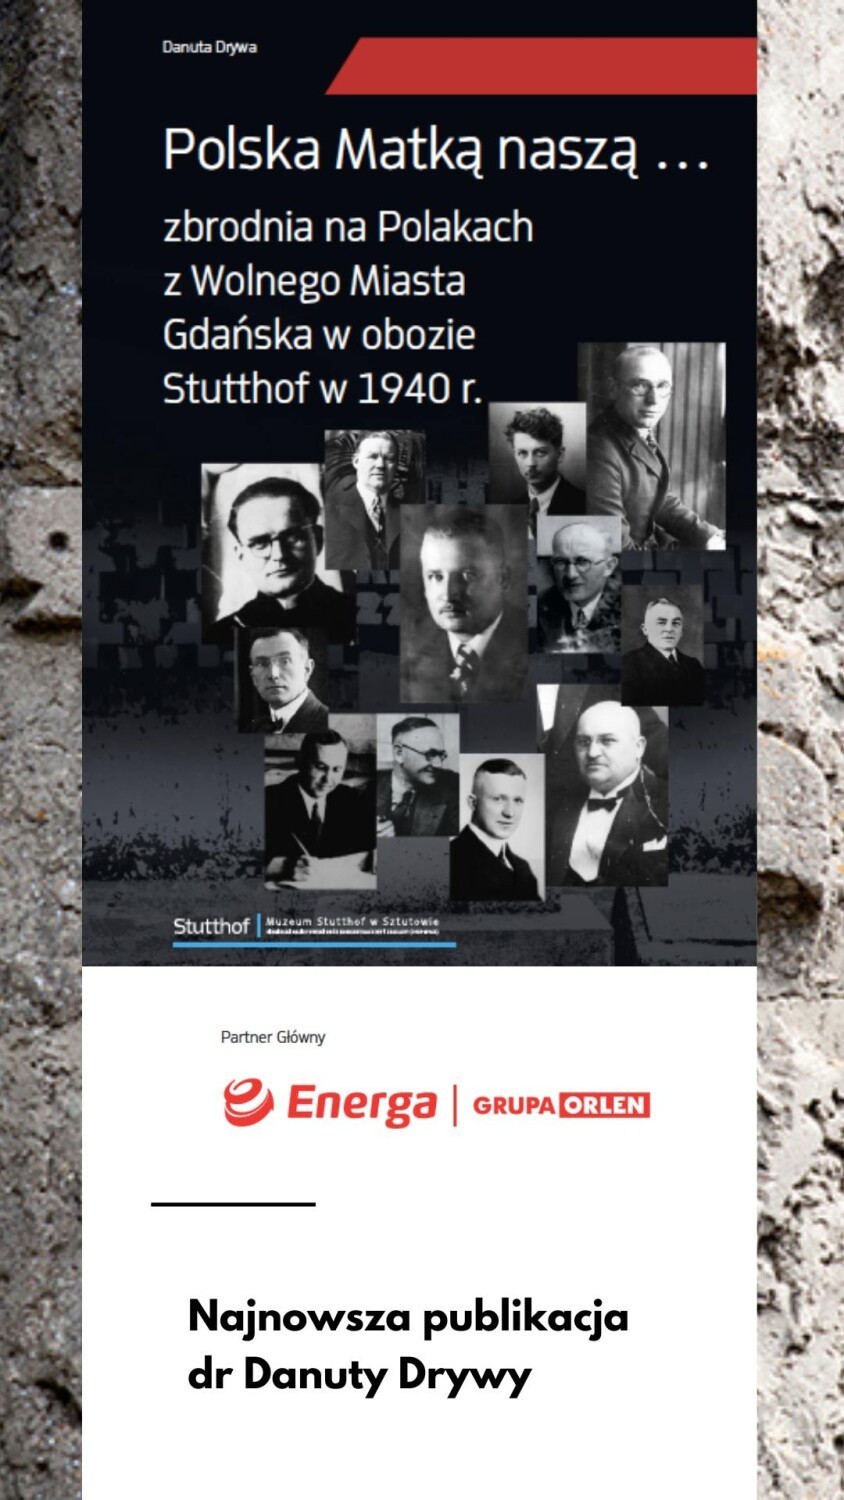 Egzekucje w lasach koło obozu Stutthof. Danuta Drywa w najnowszej publikacji przedstawia sylwetki ofiar niemieckich zbrodni